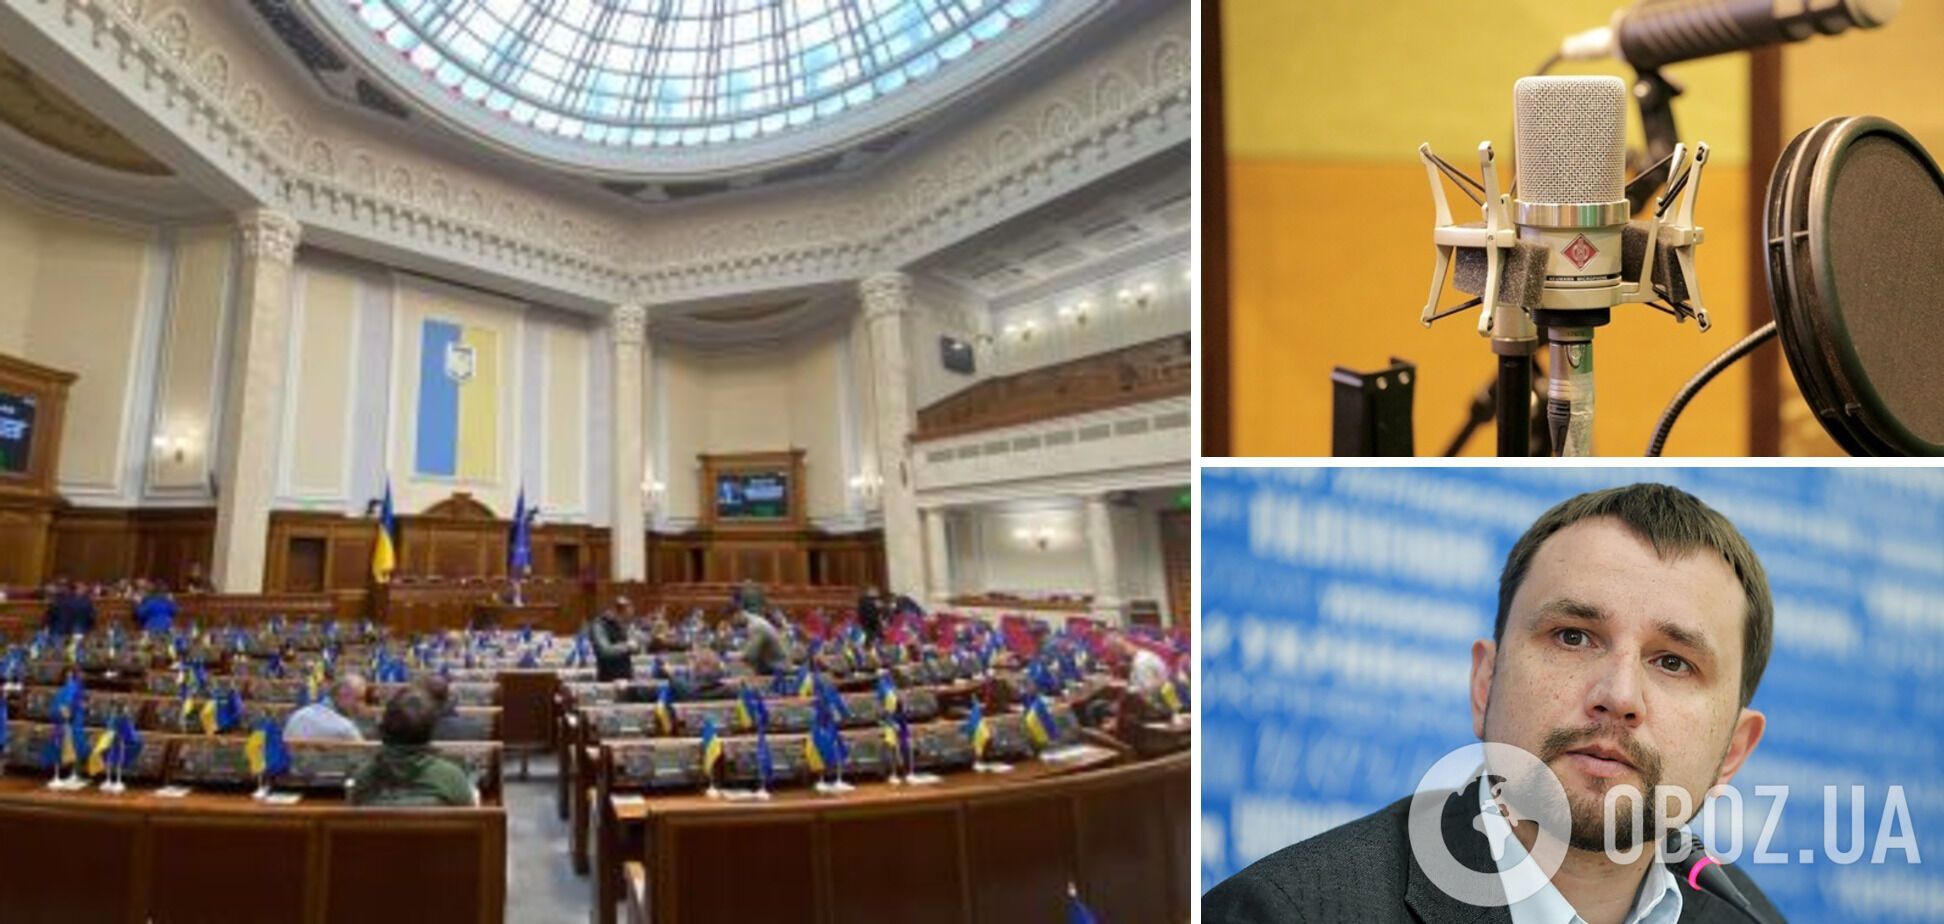 Комитет Рады поддержал законопроект об английском языке без норм, ограничивающих украинский на телевидении и в кинопрокате, – Вятрович